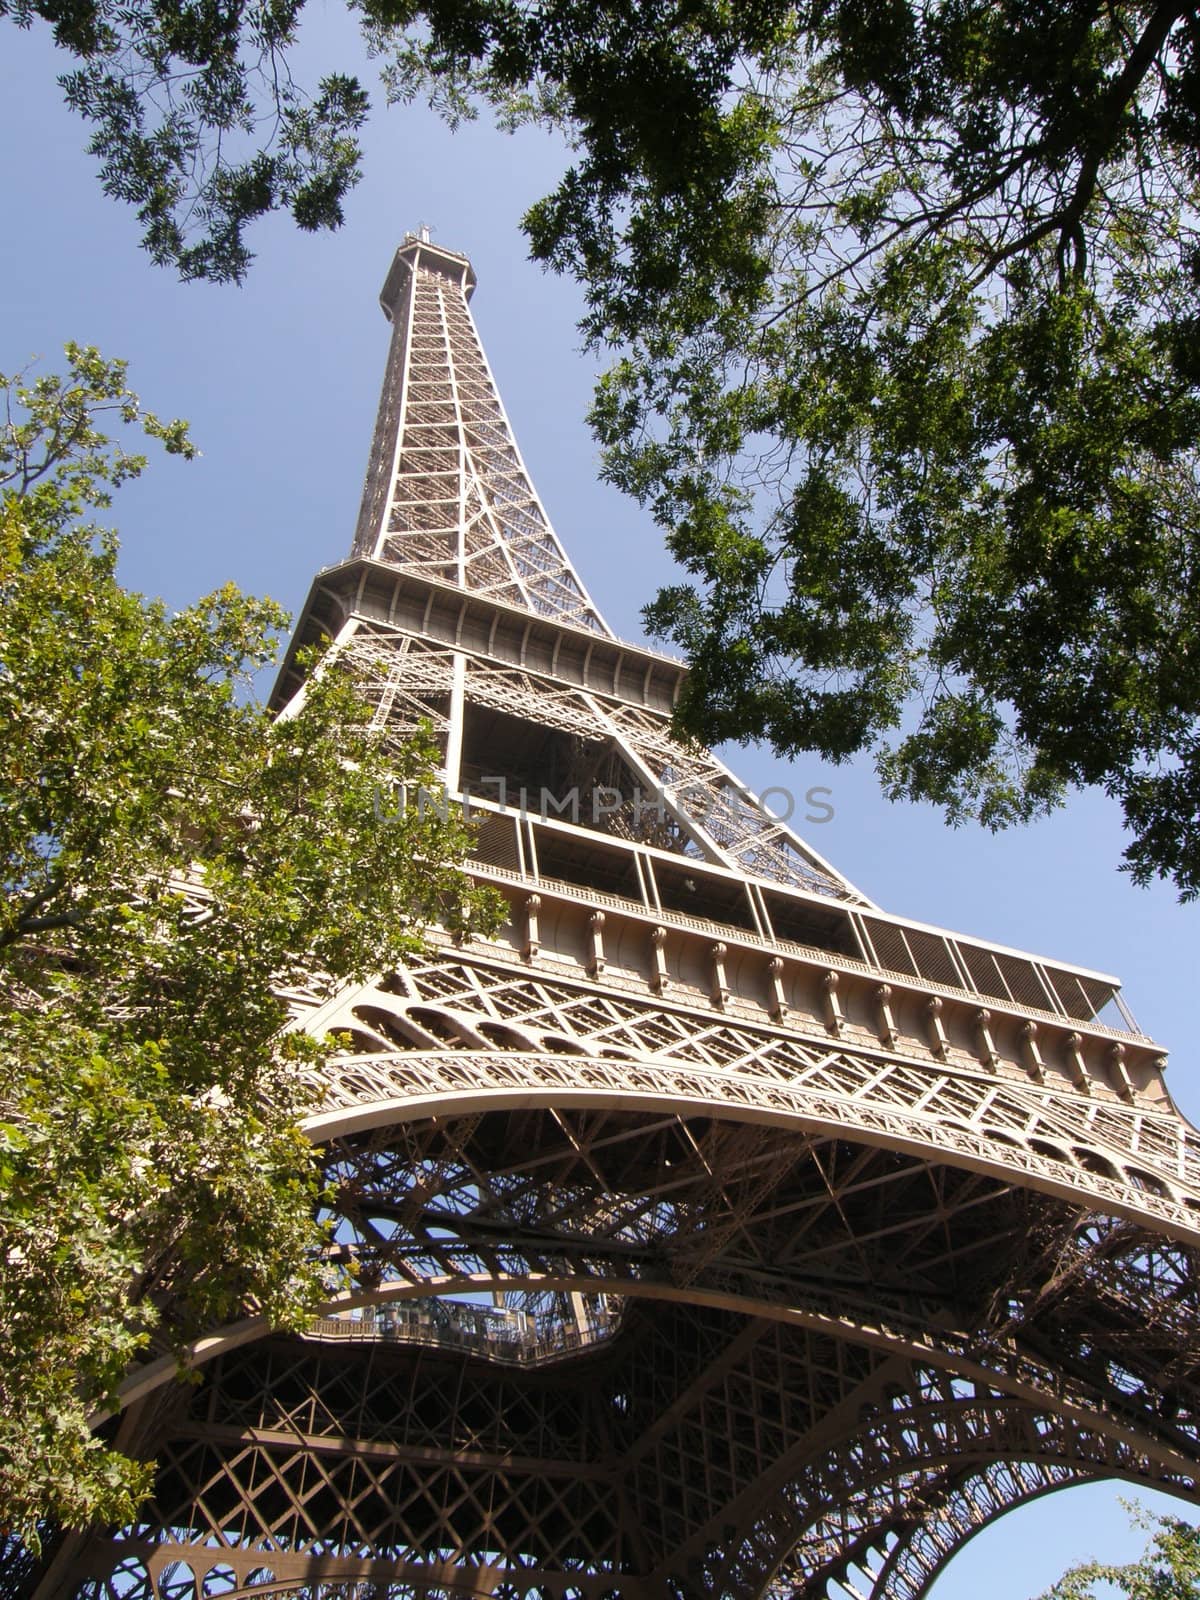 Eiffel Tower in Paris by sainaniritu